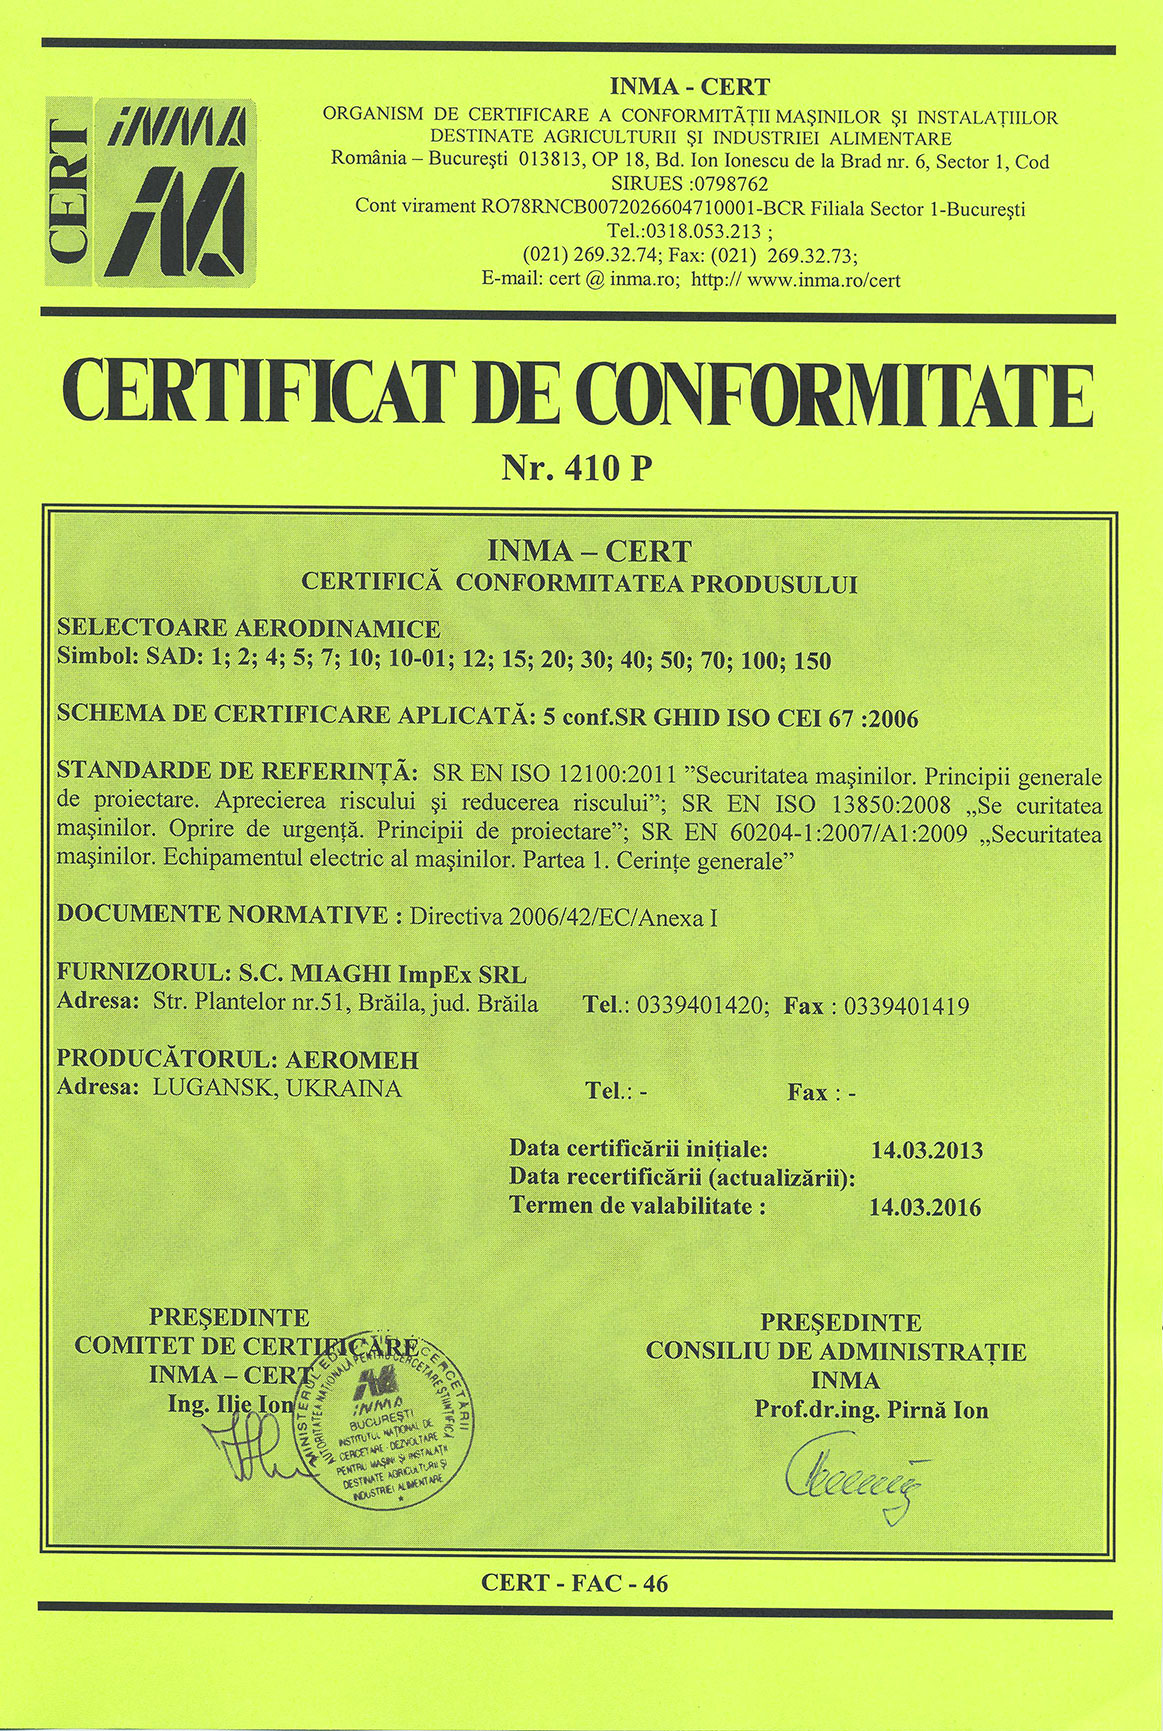 Сертификат CE СЕ для легальной реализации на рынках ЕС сепаратор САД-1, сепаратор САД-4, сепаратор САД-7, сепаратор САД-10-01, сепаратор САД-14, сепаратор САД-30, сепаратор САД-50, сепаратор САД-70, сепаратор САД-150